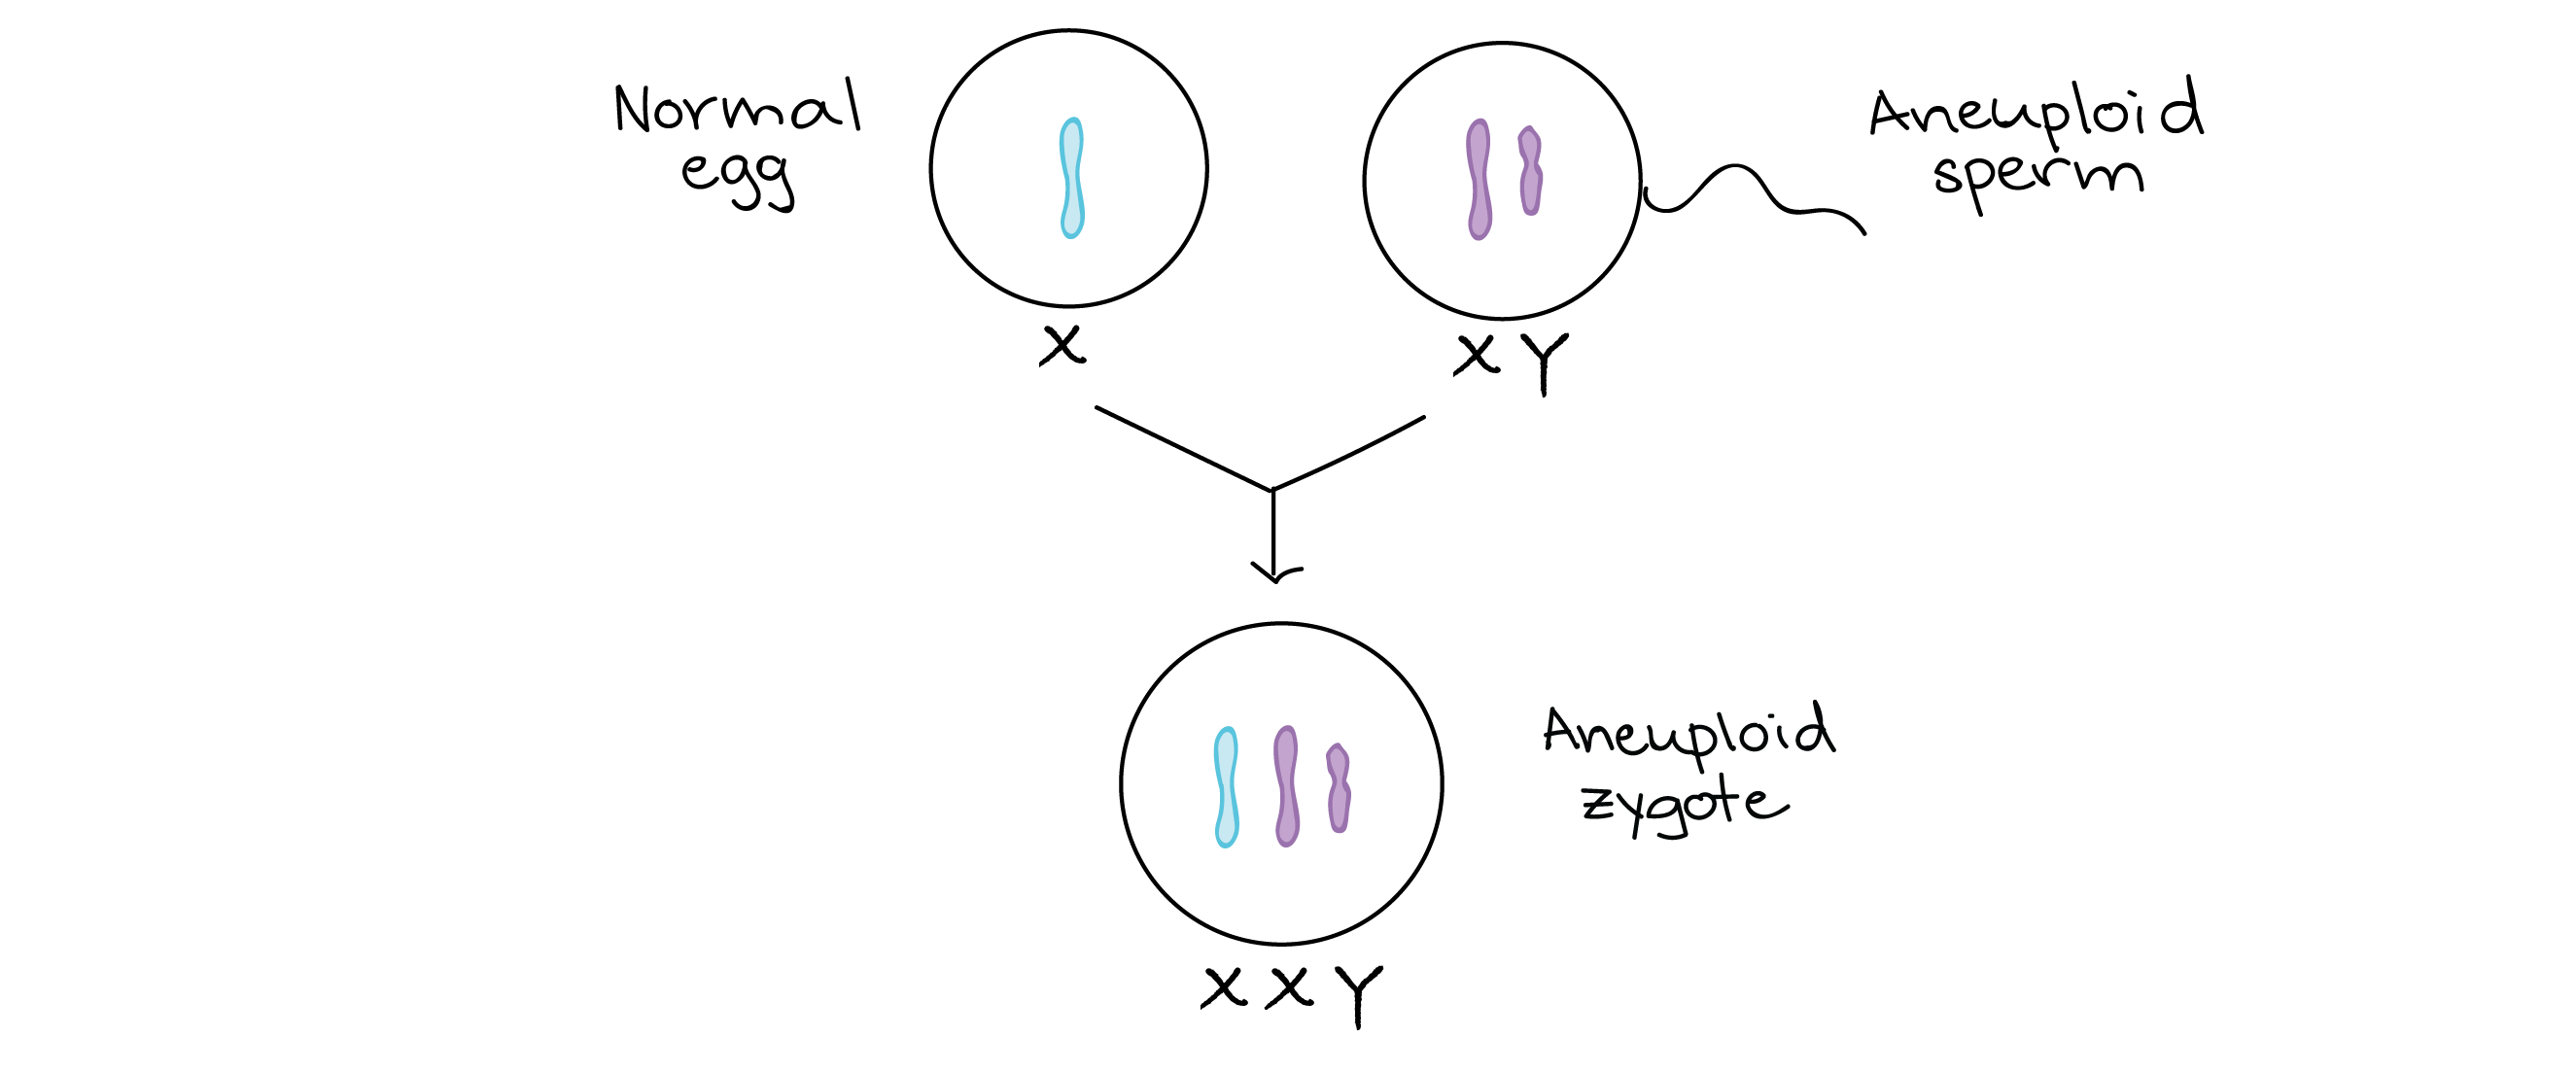 Fertilización de óvulo normal (X) con esperma aneuploide (XY)